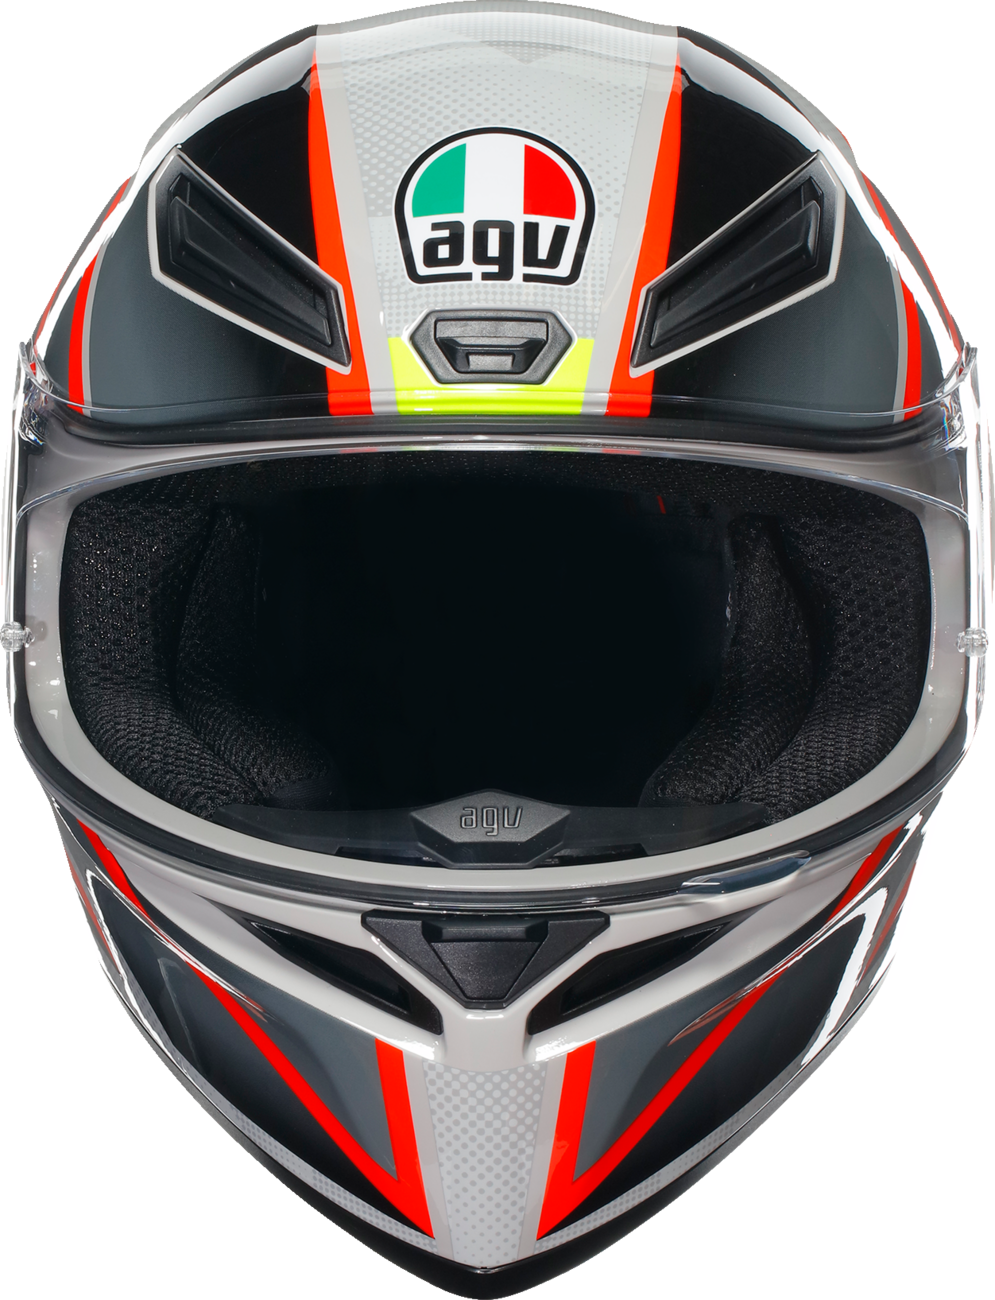 AGV K1 S Helmet - Blipper - Gray/Red - Medium 2118394003030M